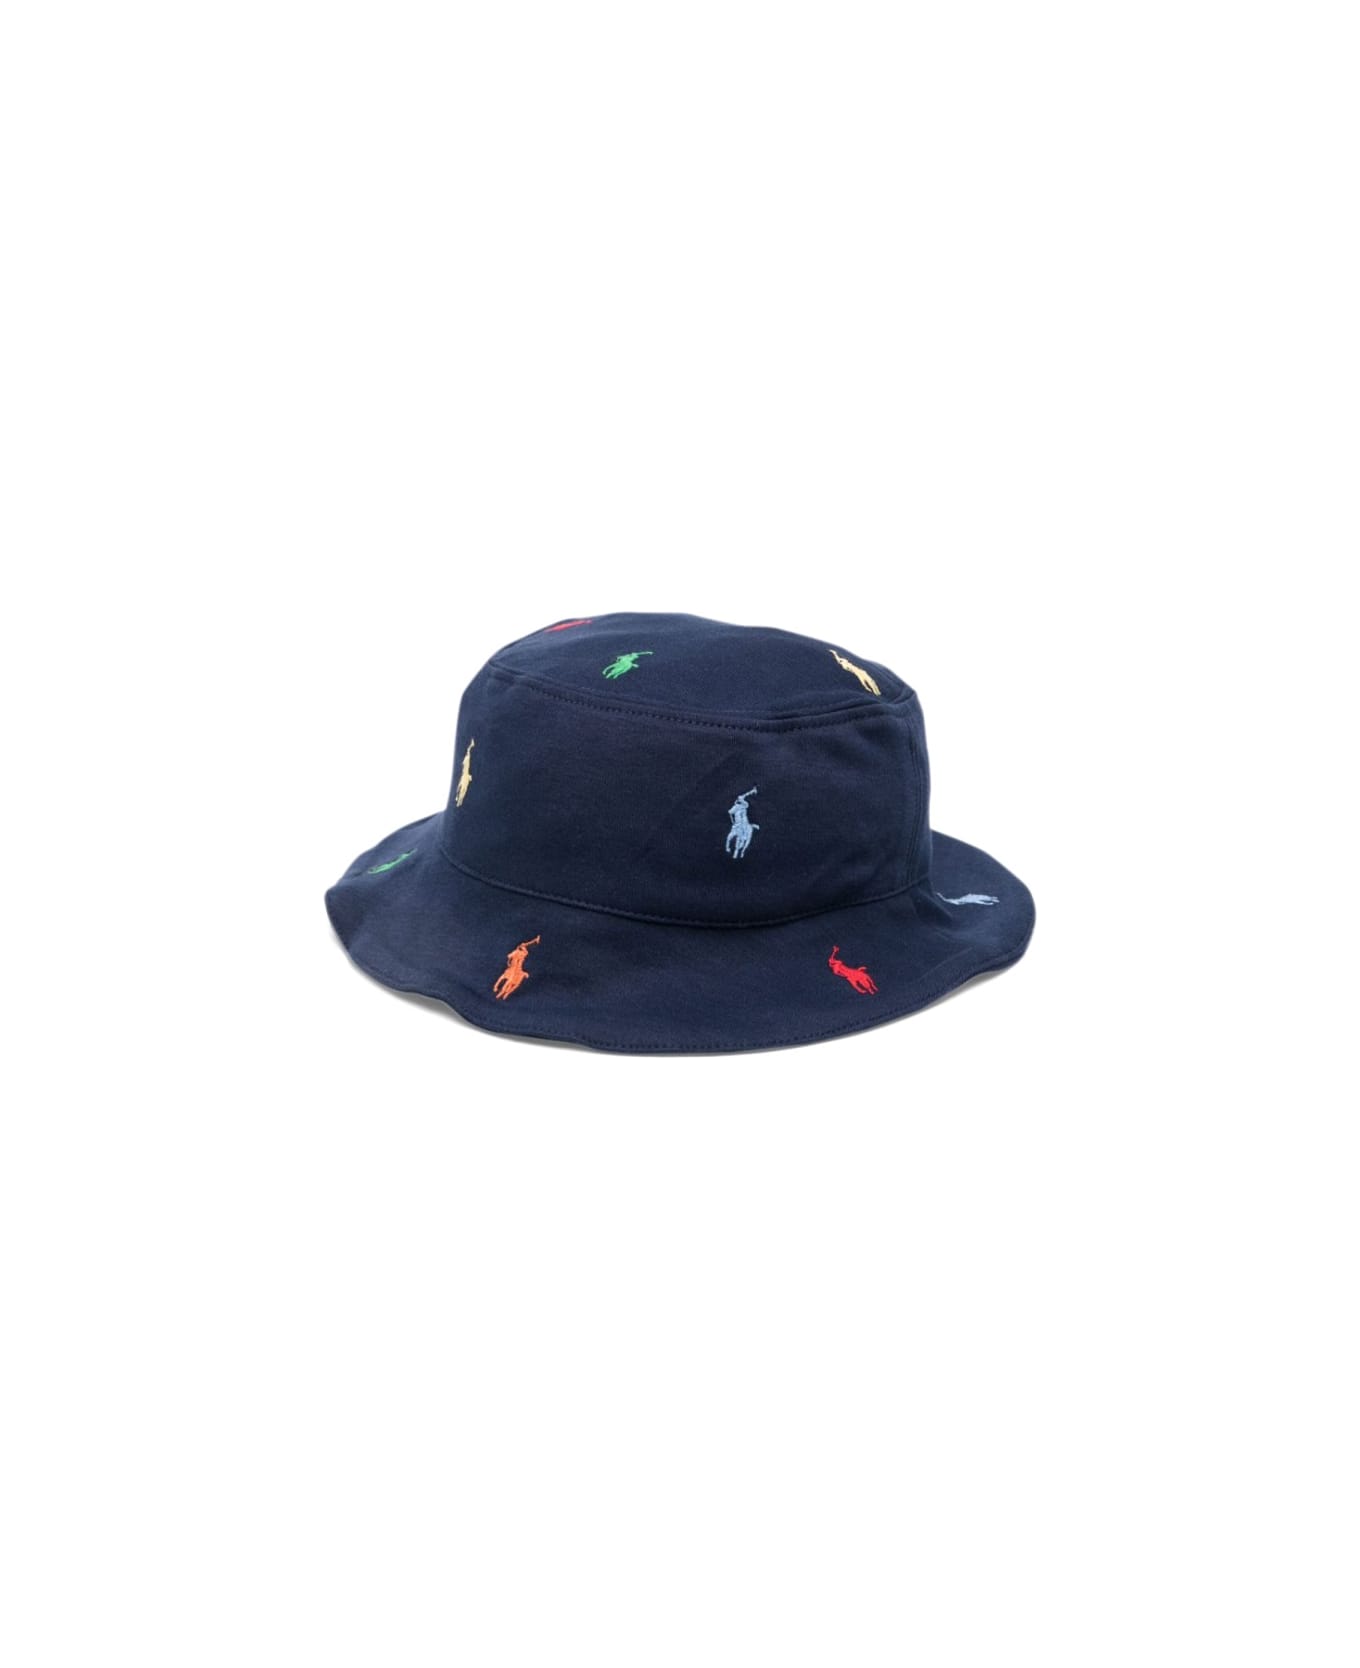 Polo Ralph Lauren Hat-headwear-hat - BLUE